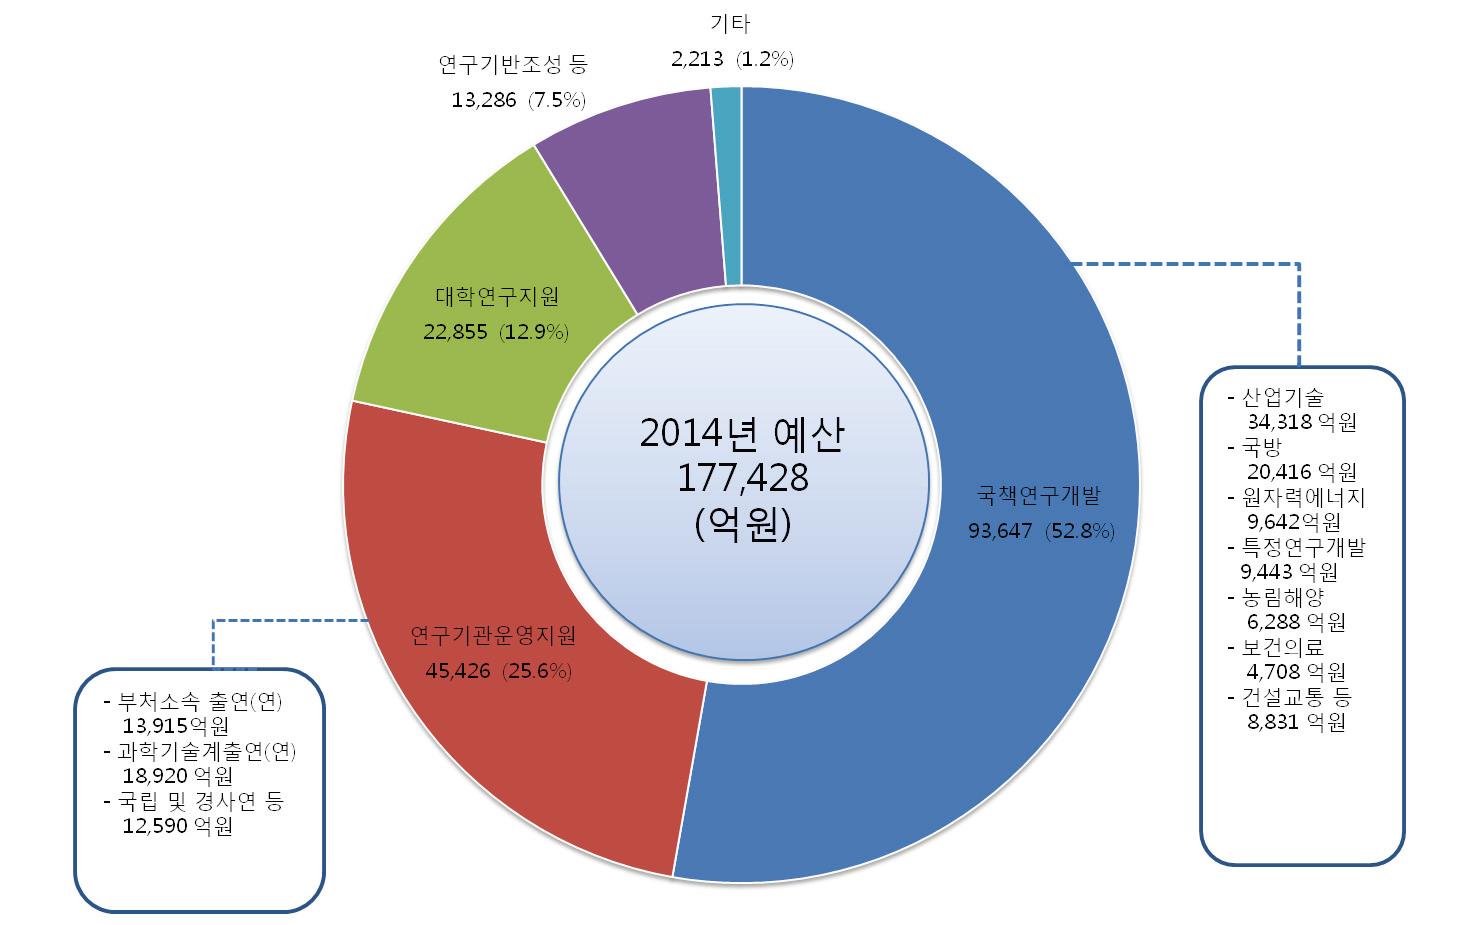 2014년도 기능별 정부연구개발예산 현황